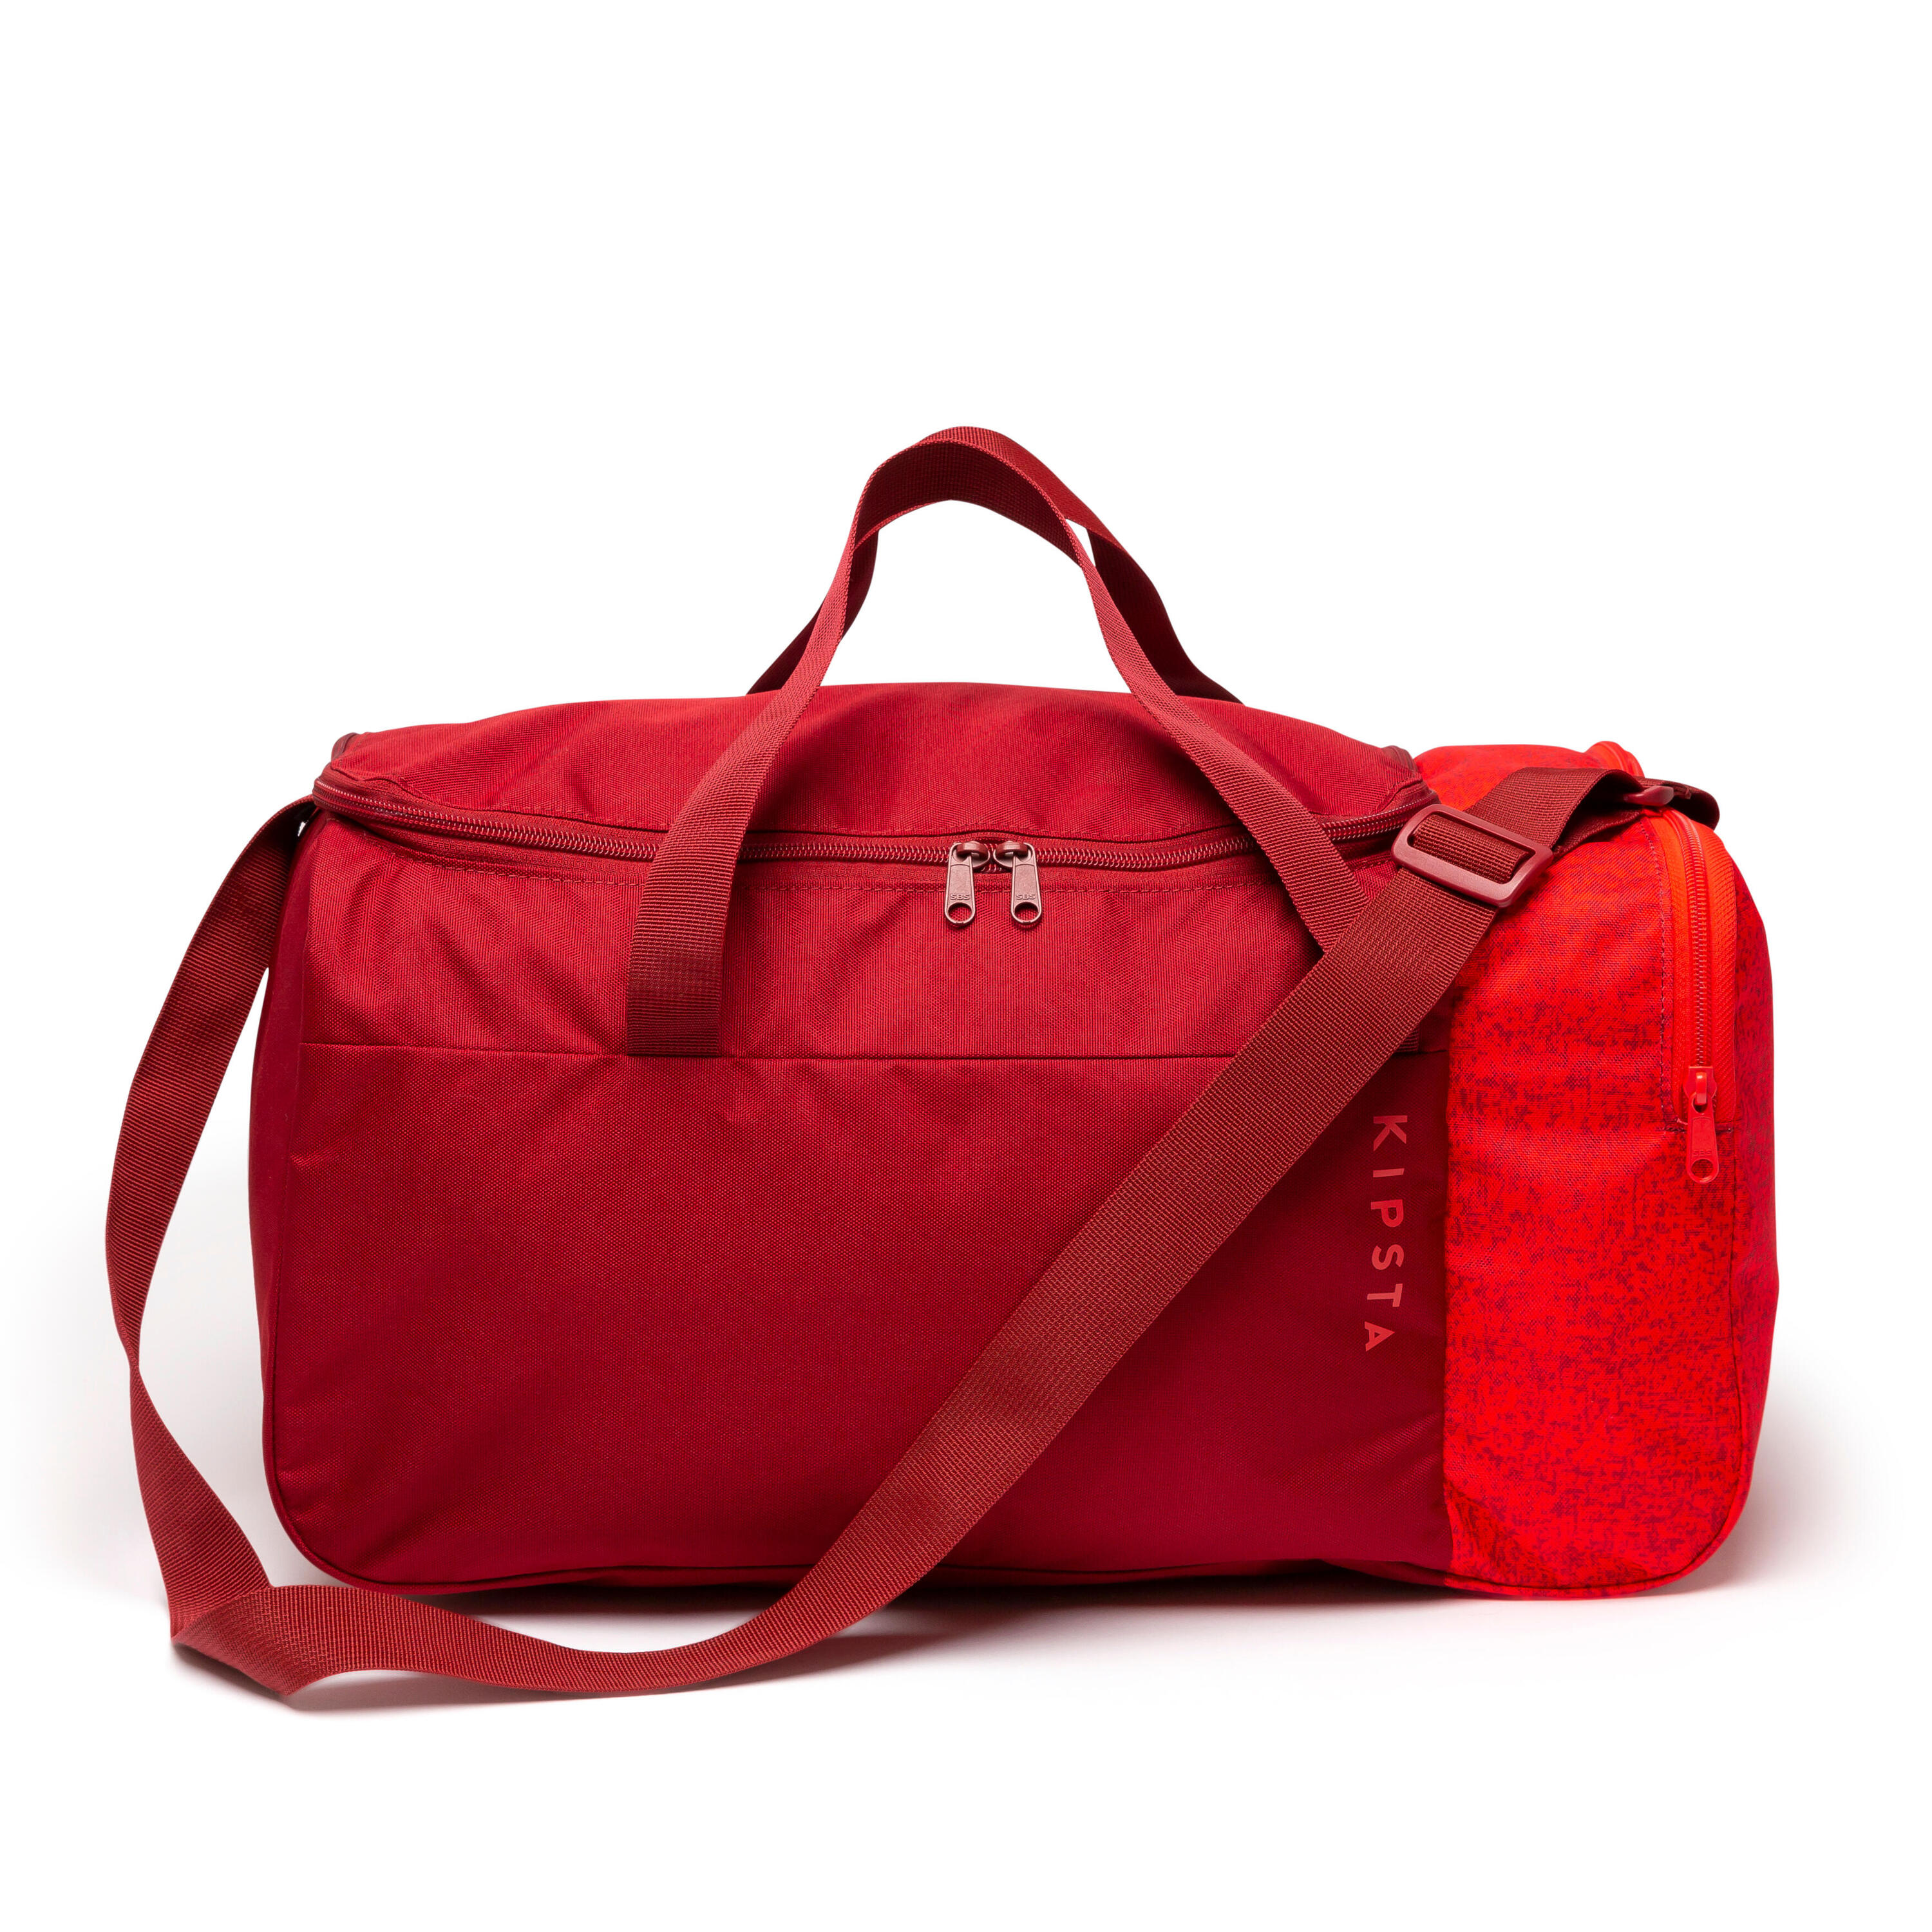 35L Sports Bag Essential - Burgundy 4/7